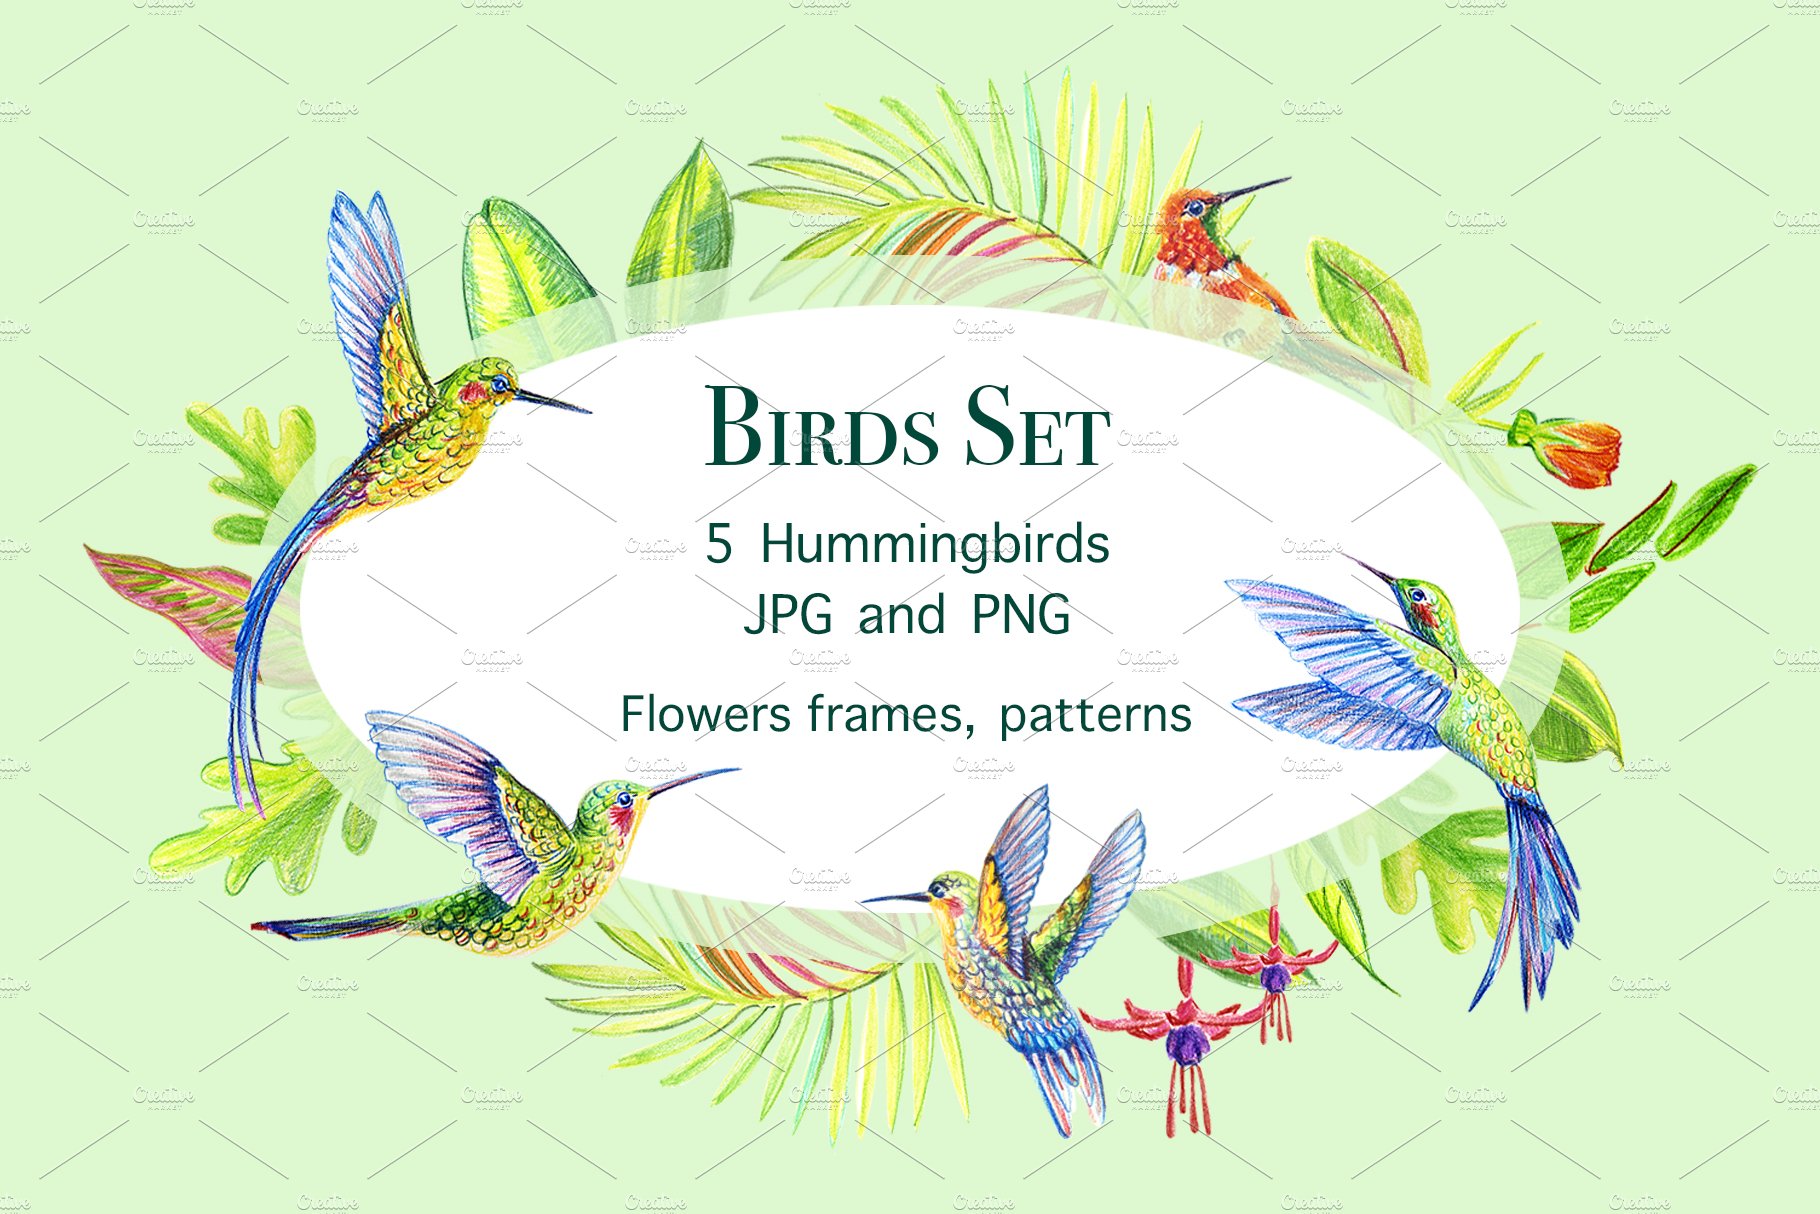 Hummingbirds. Tropical birds. cover image.